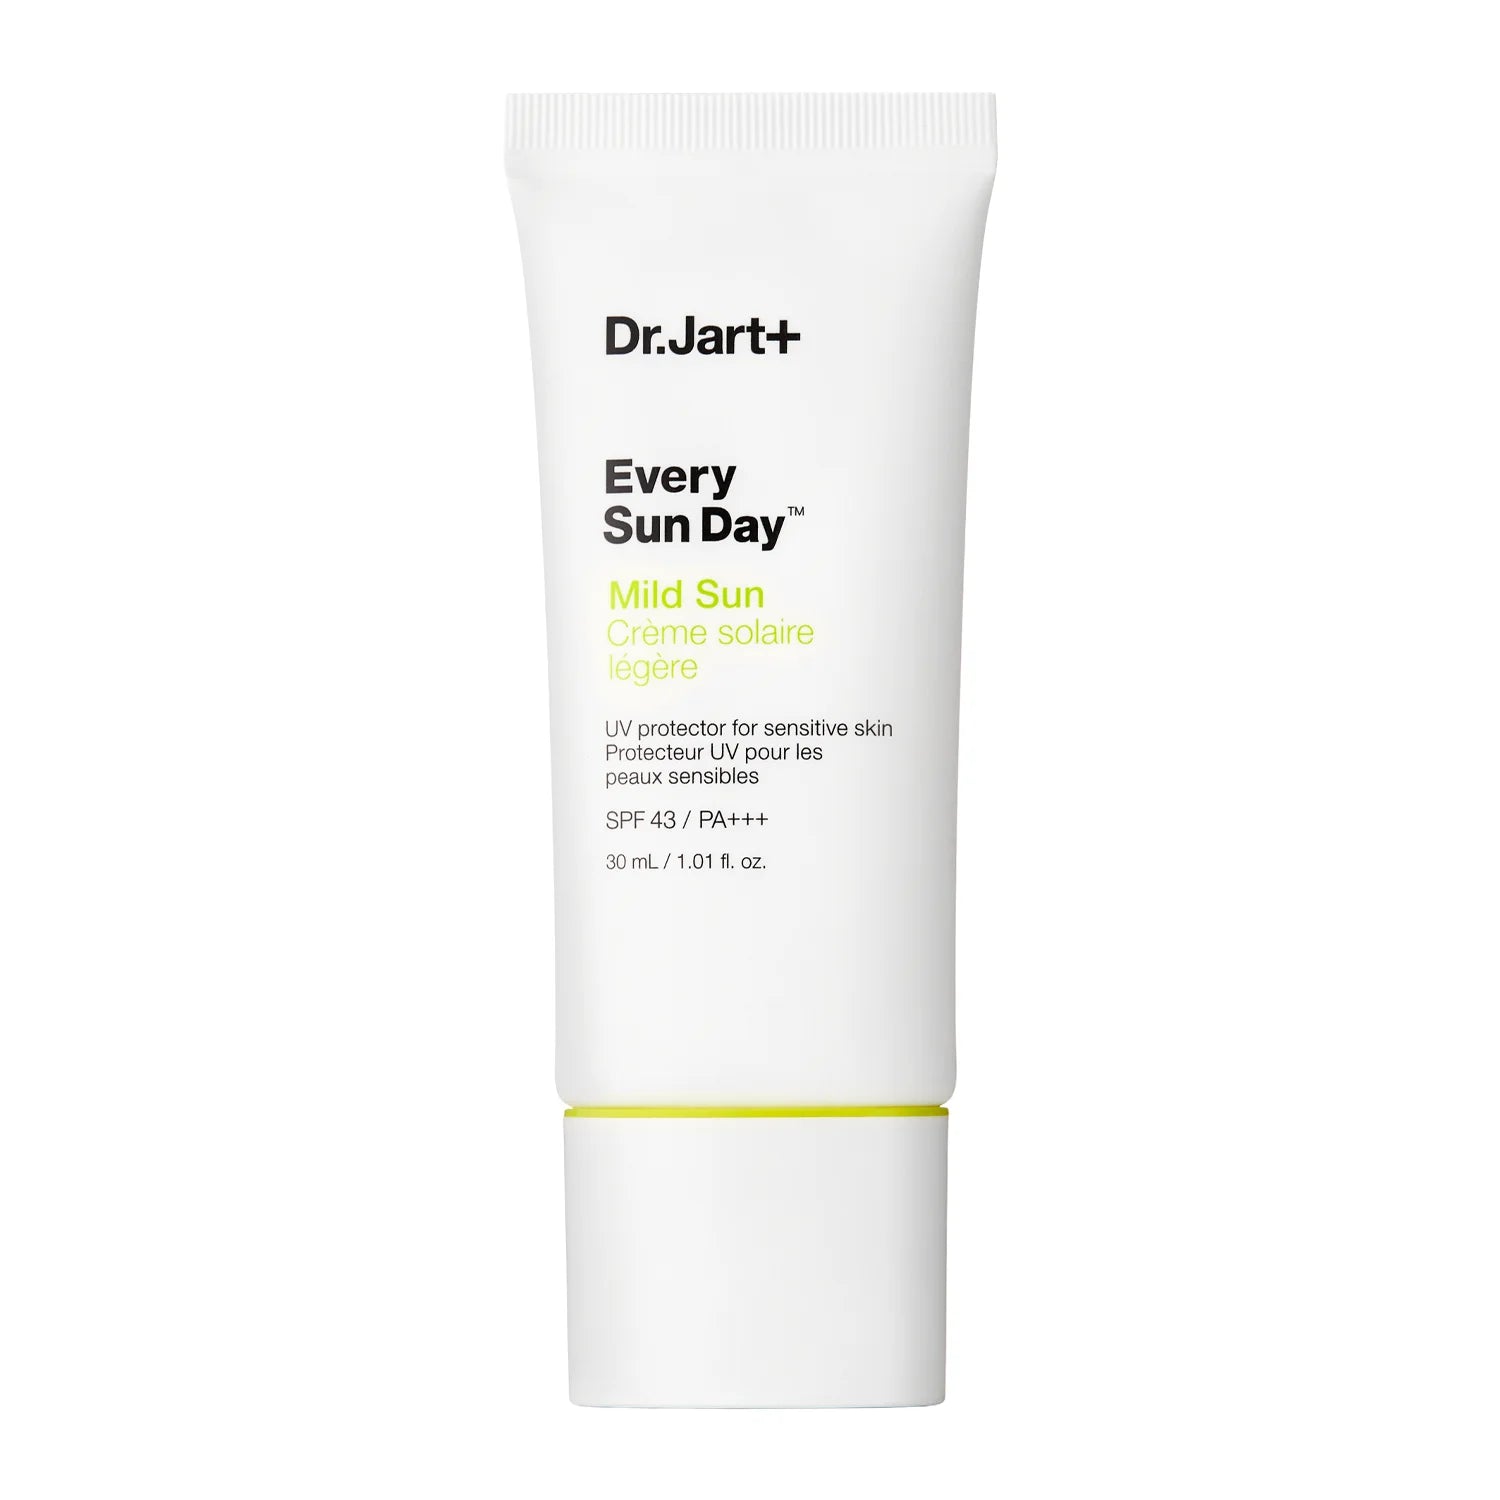 Dr.Jart+ - Every Sun Day Mild Sun SPF43/PA+++ - Daily Sunscreen - 30ml